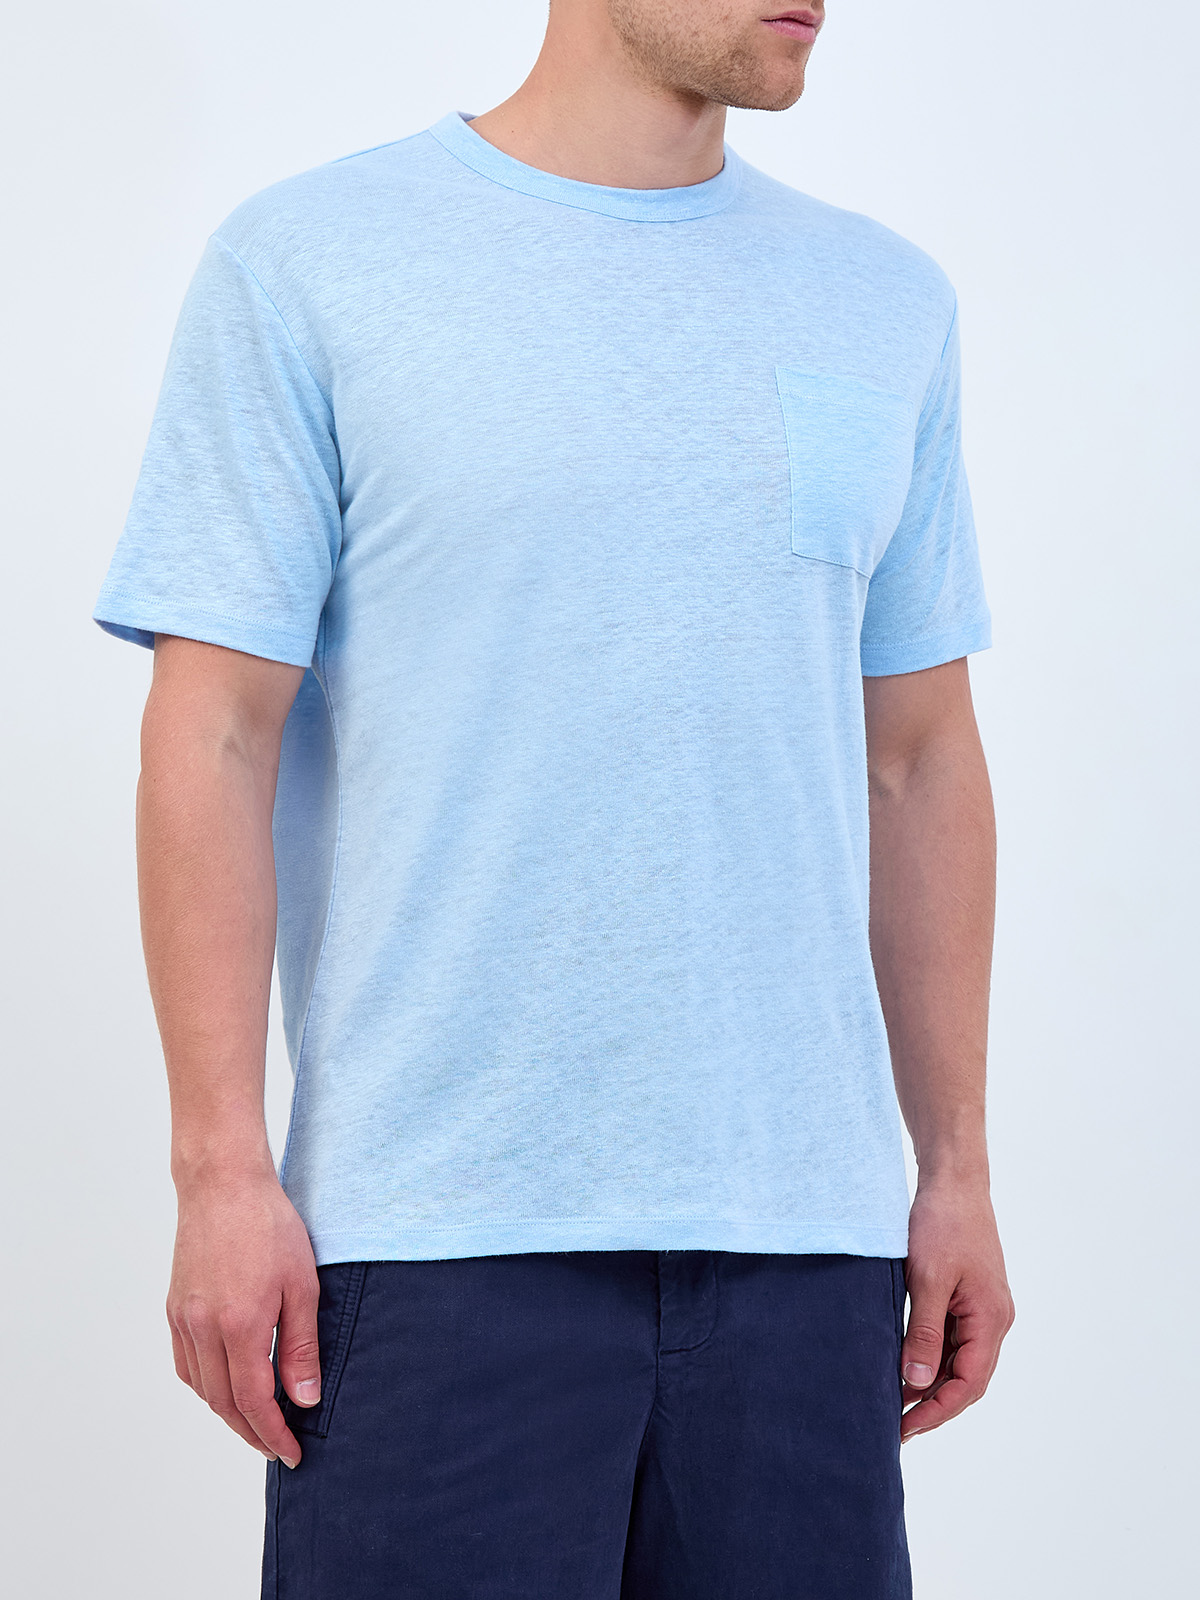 Свободная футболка из меланжевого льна с контрастной вышивкой MC2 SAINT BARTH, цвет голубой, размер M;L;XL;2XL;3XL;4XL - фото 3